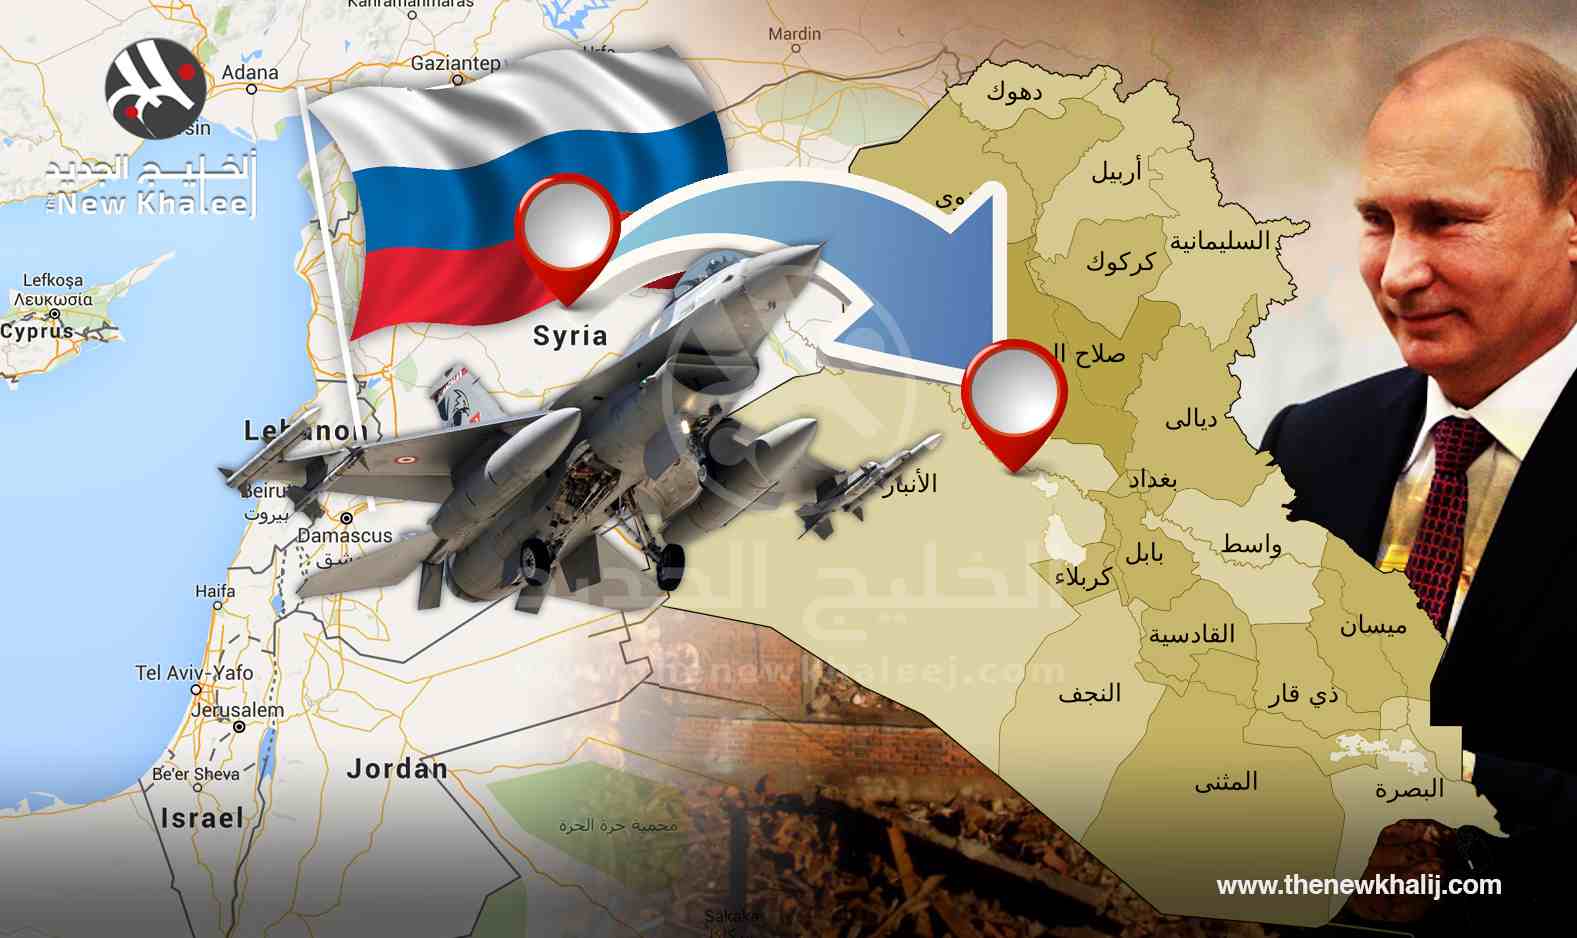 
Россия наращивает свое влияние в Ираке